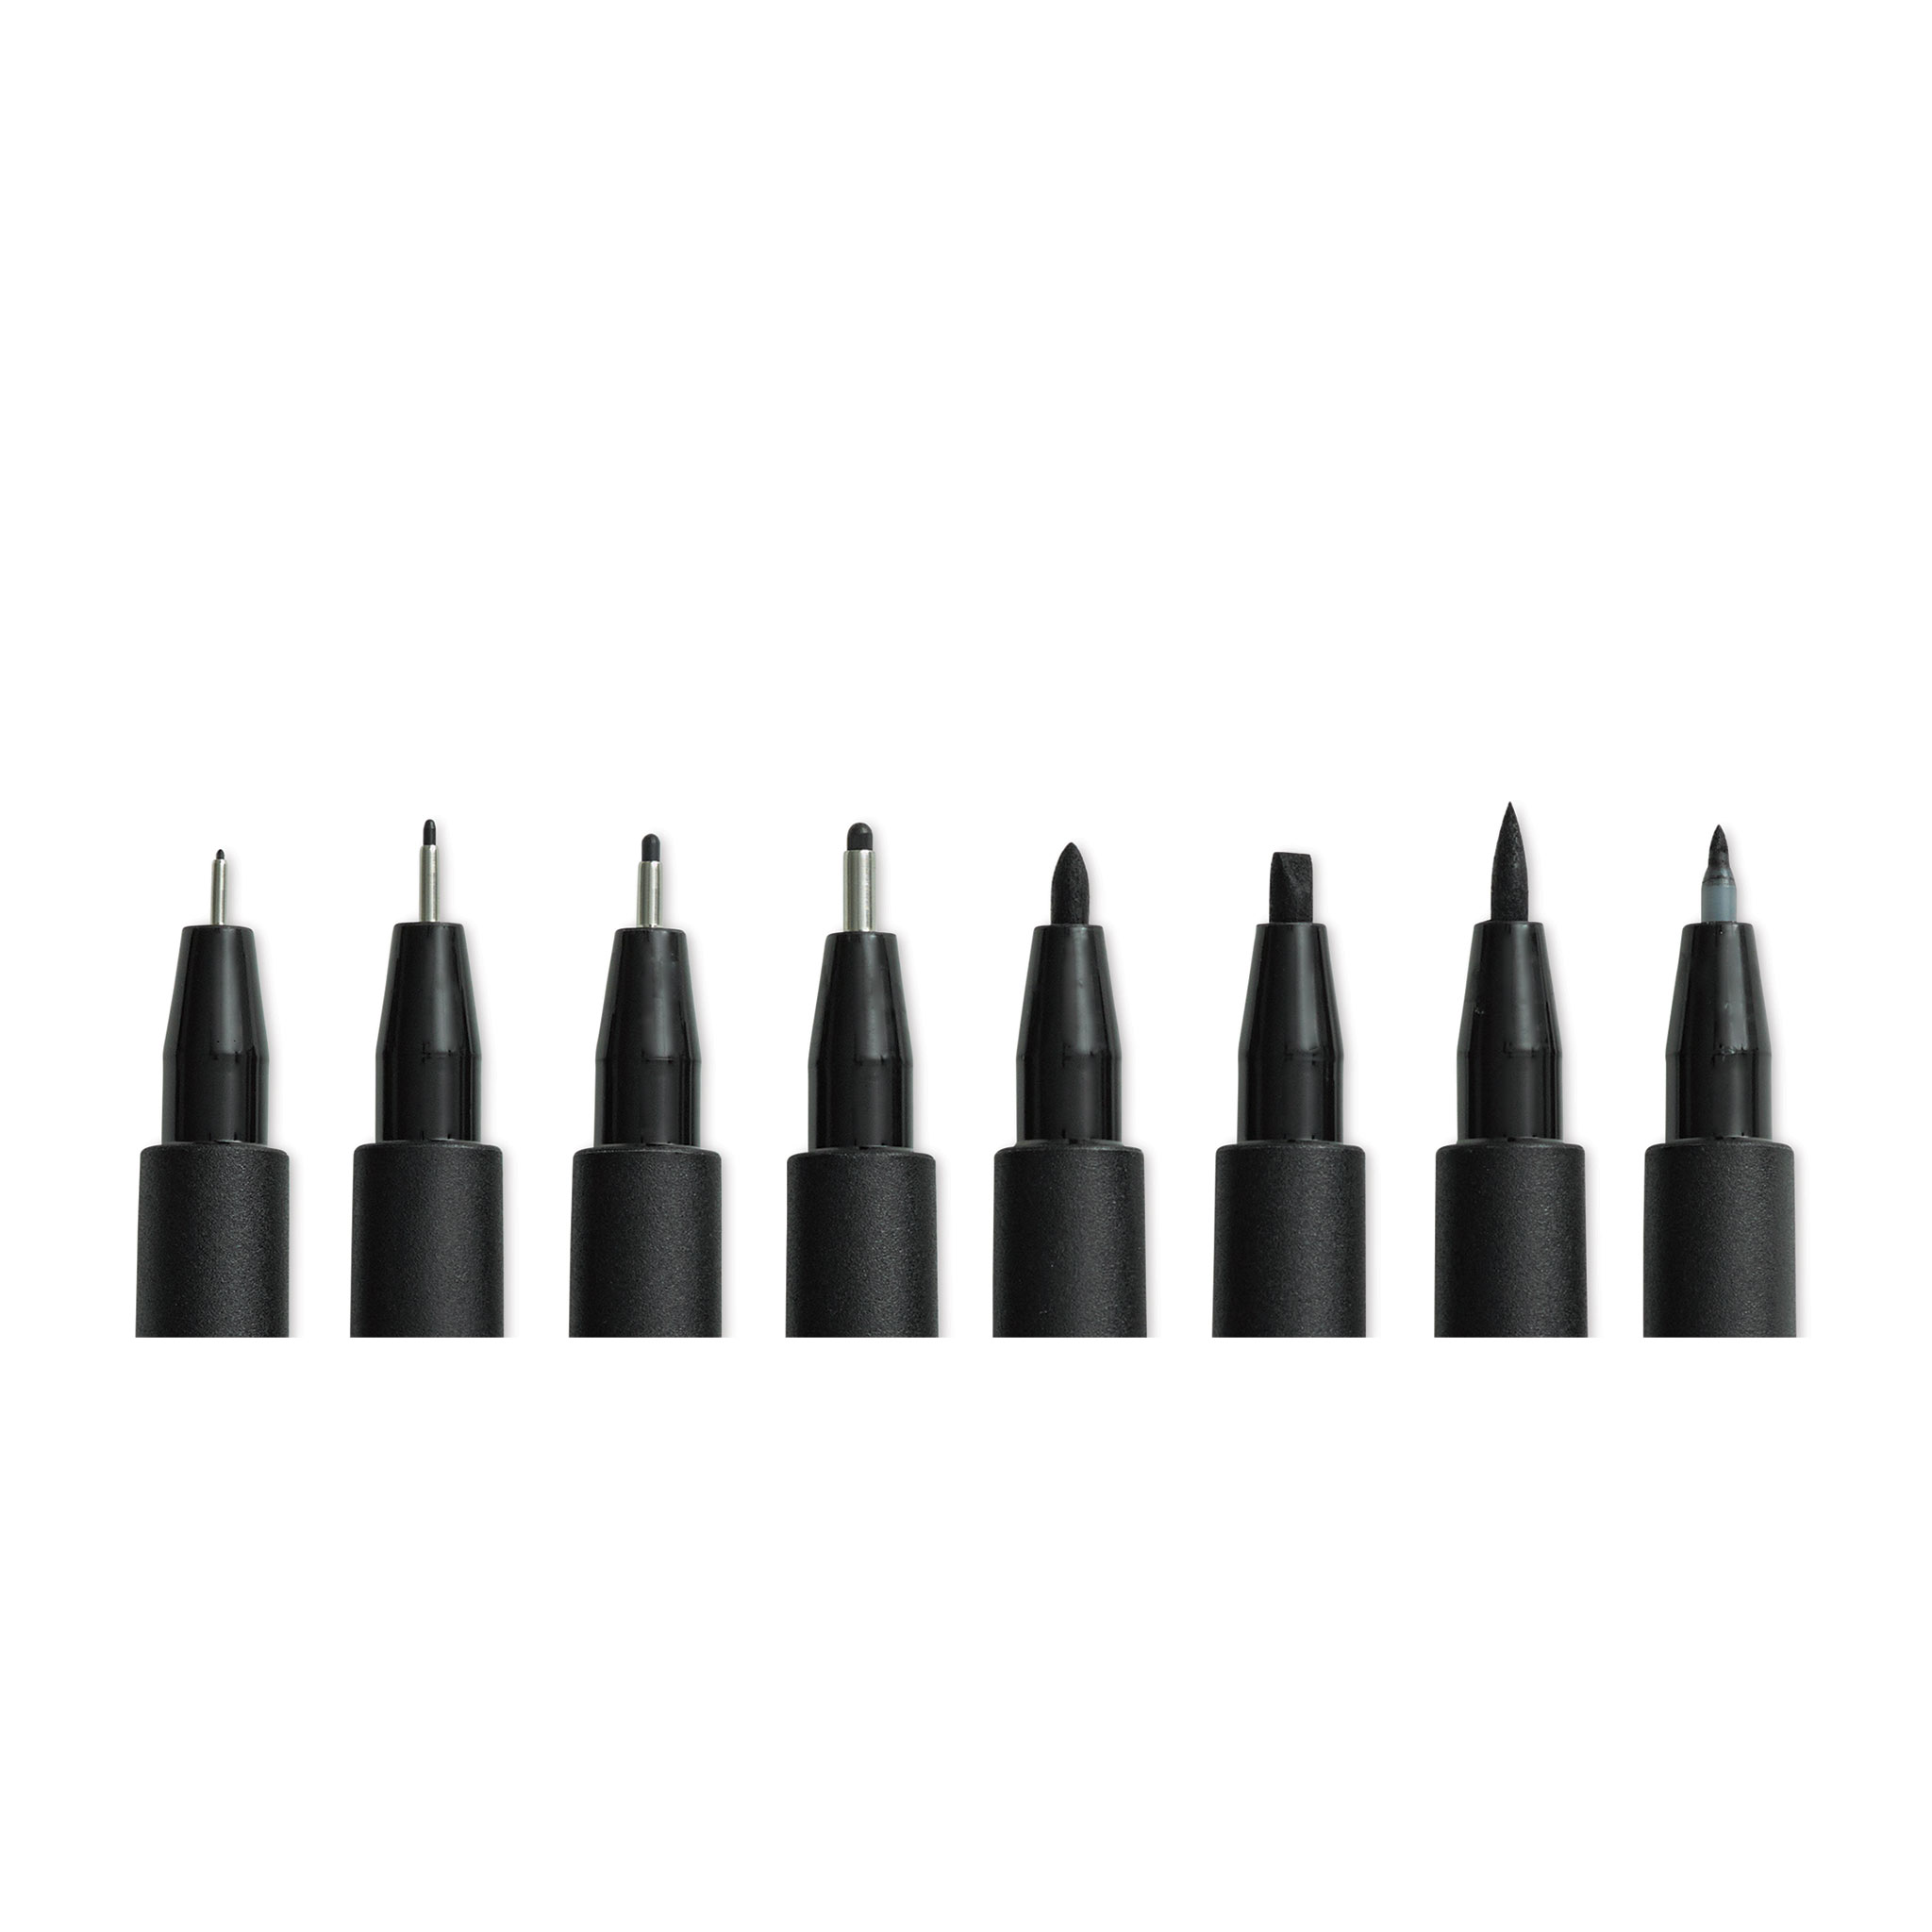 Black Faber-Castell PITT Artist Pens - 4 Piece Set